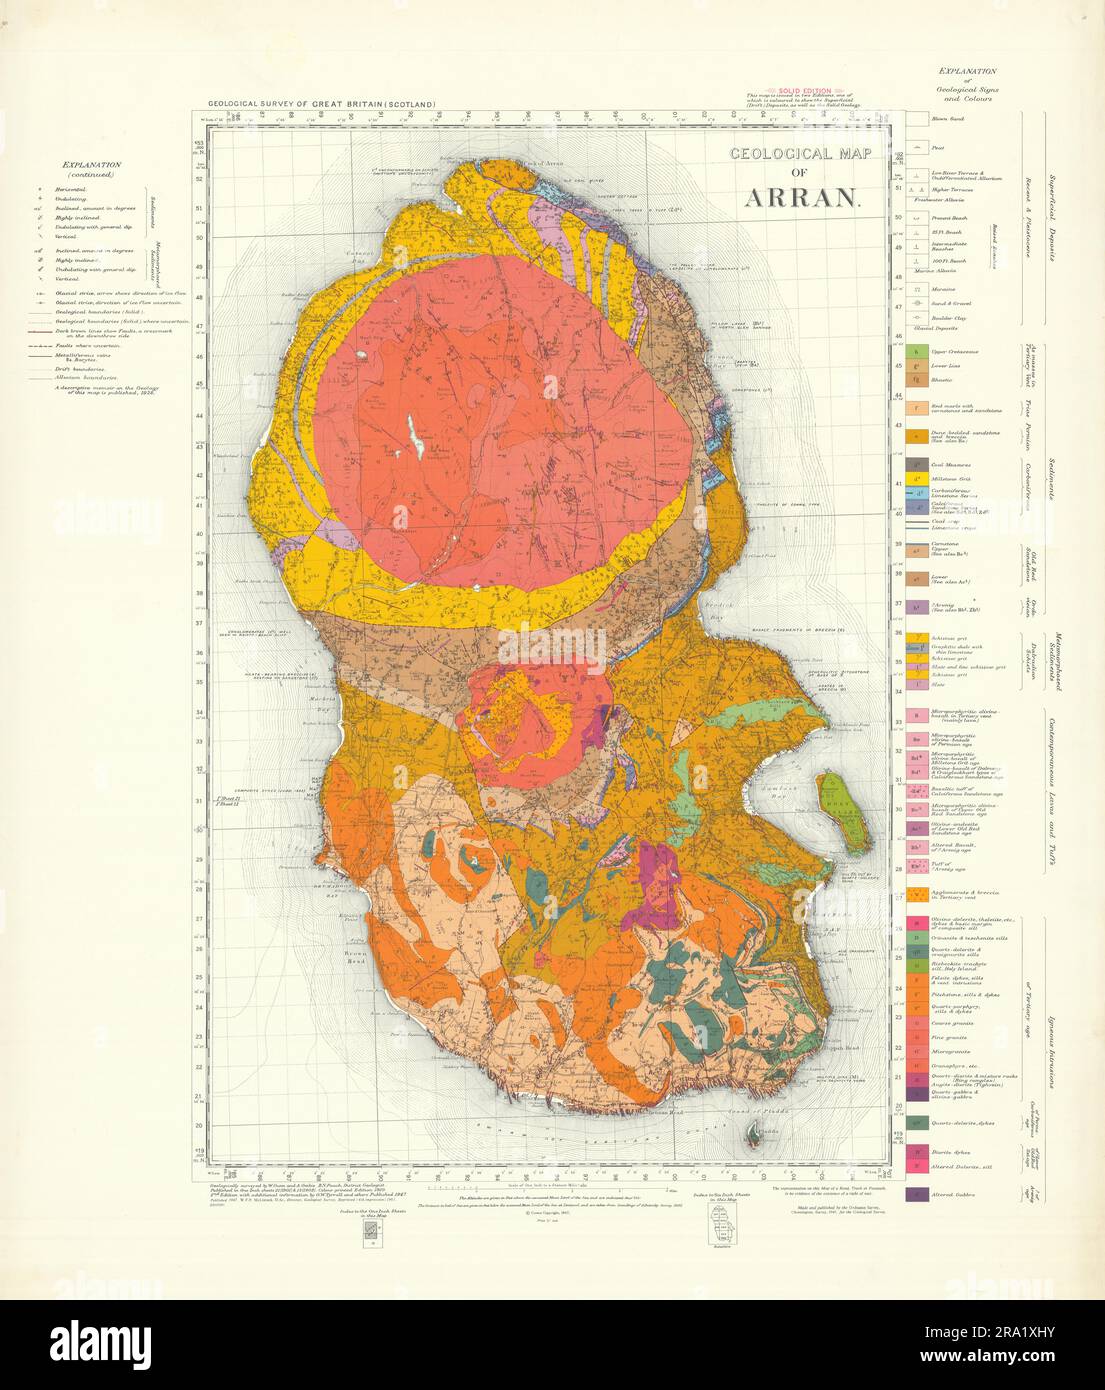 Geologische Karte von Arran. Solid-Edition-Kartenblatt für geologische Untersuchungen Schottland 1961 Stockfoto